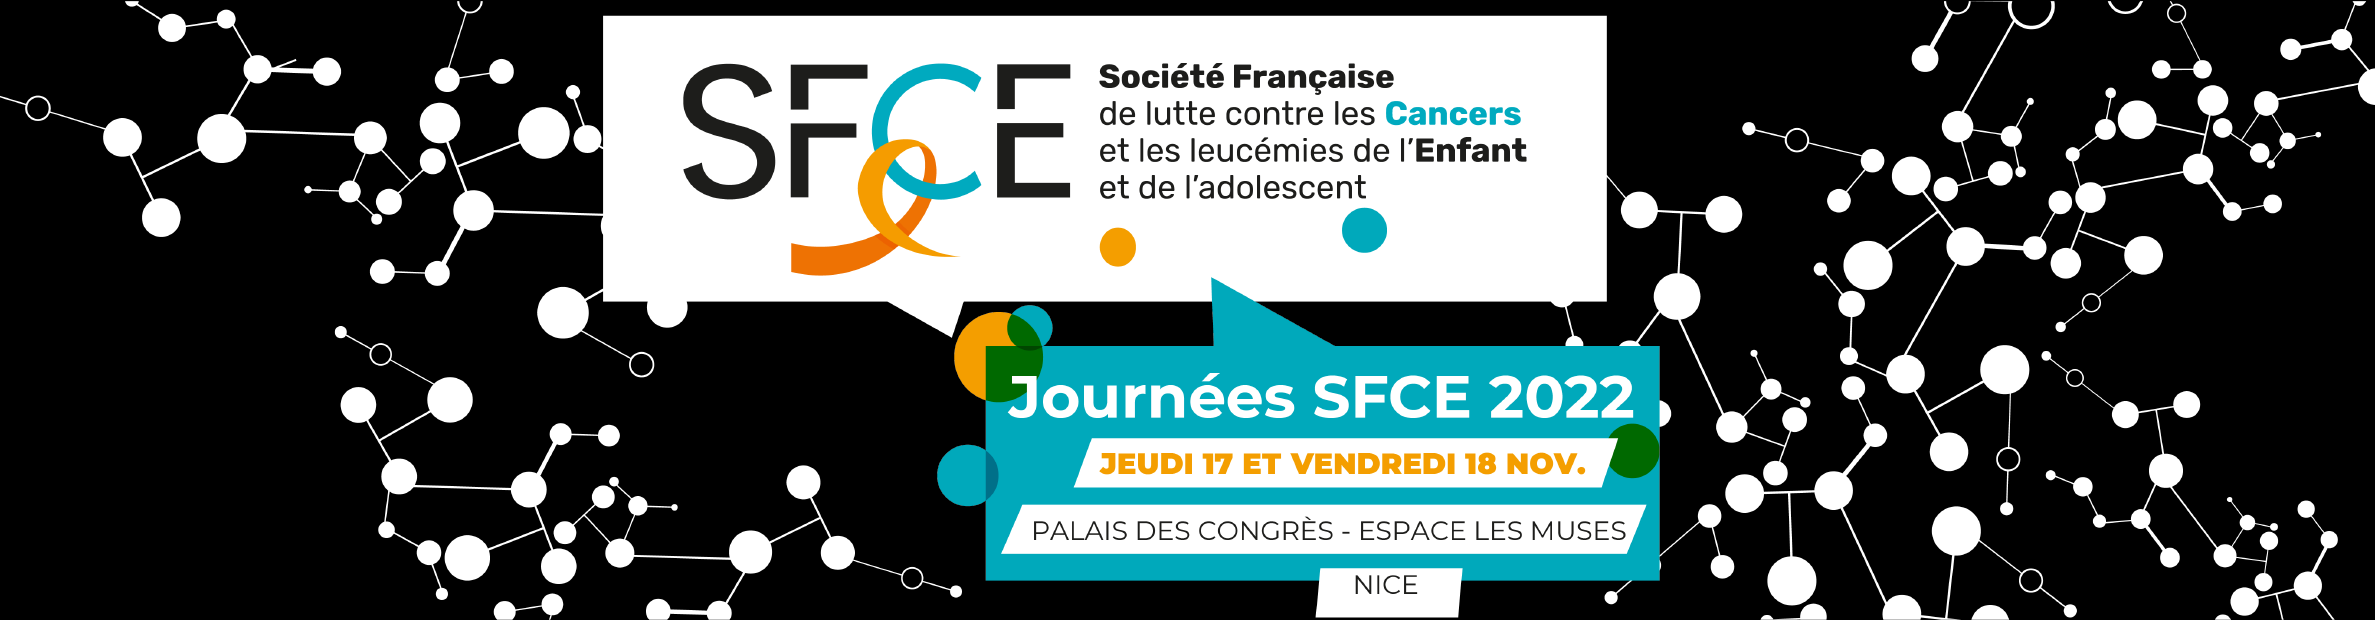 Journées de la Société Française de lutte contre les Cancers et les leucémies de l’Enfant et de l’adolescent - SFCE 2022